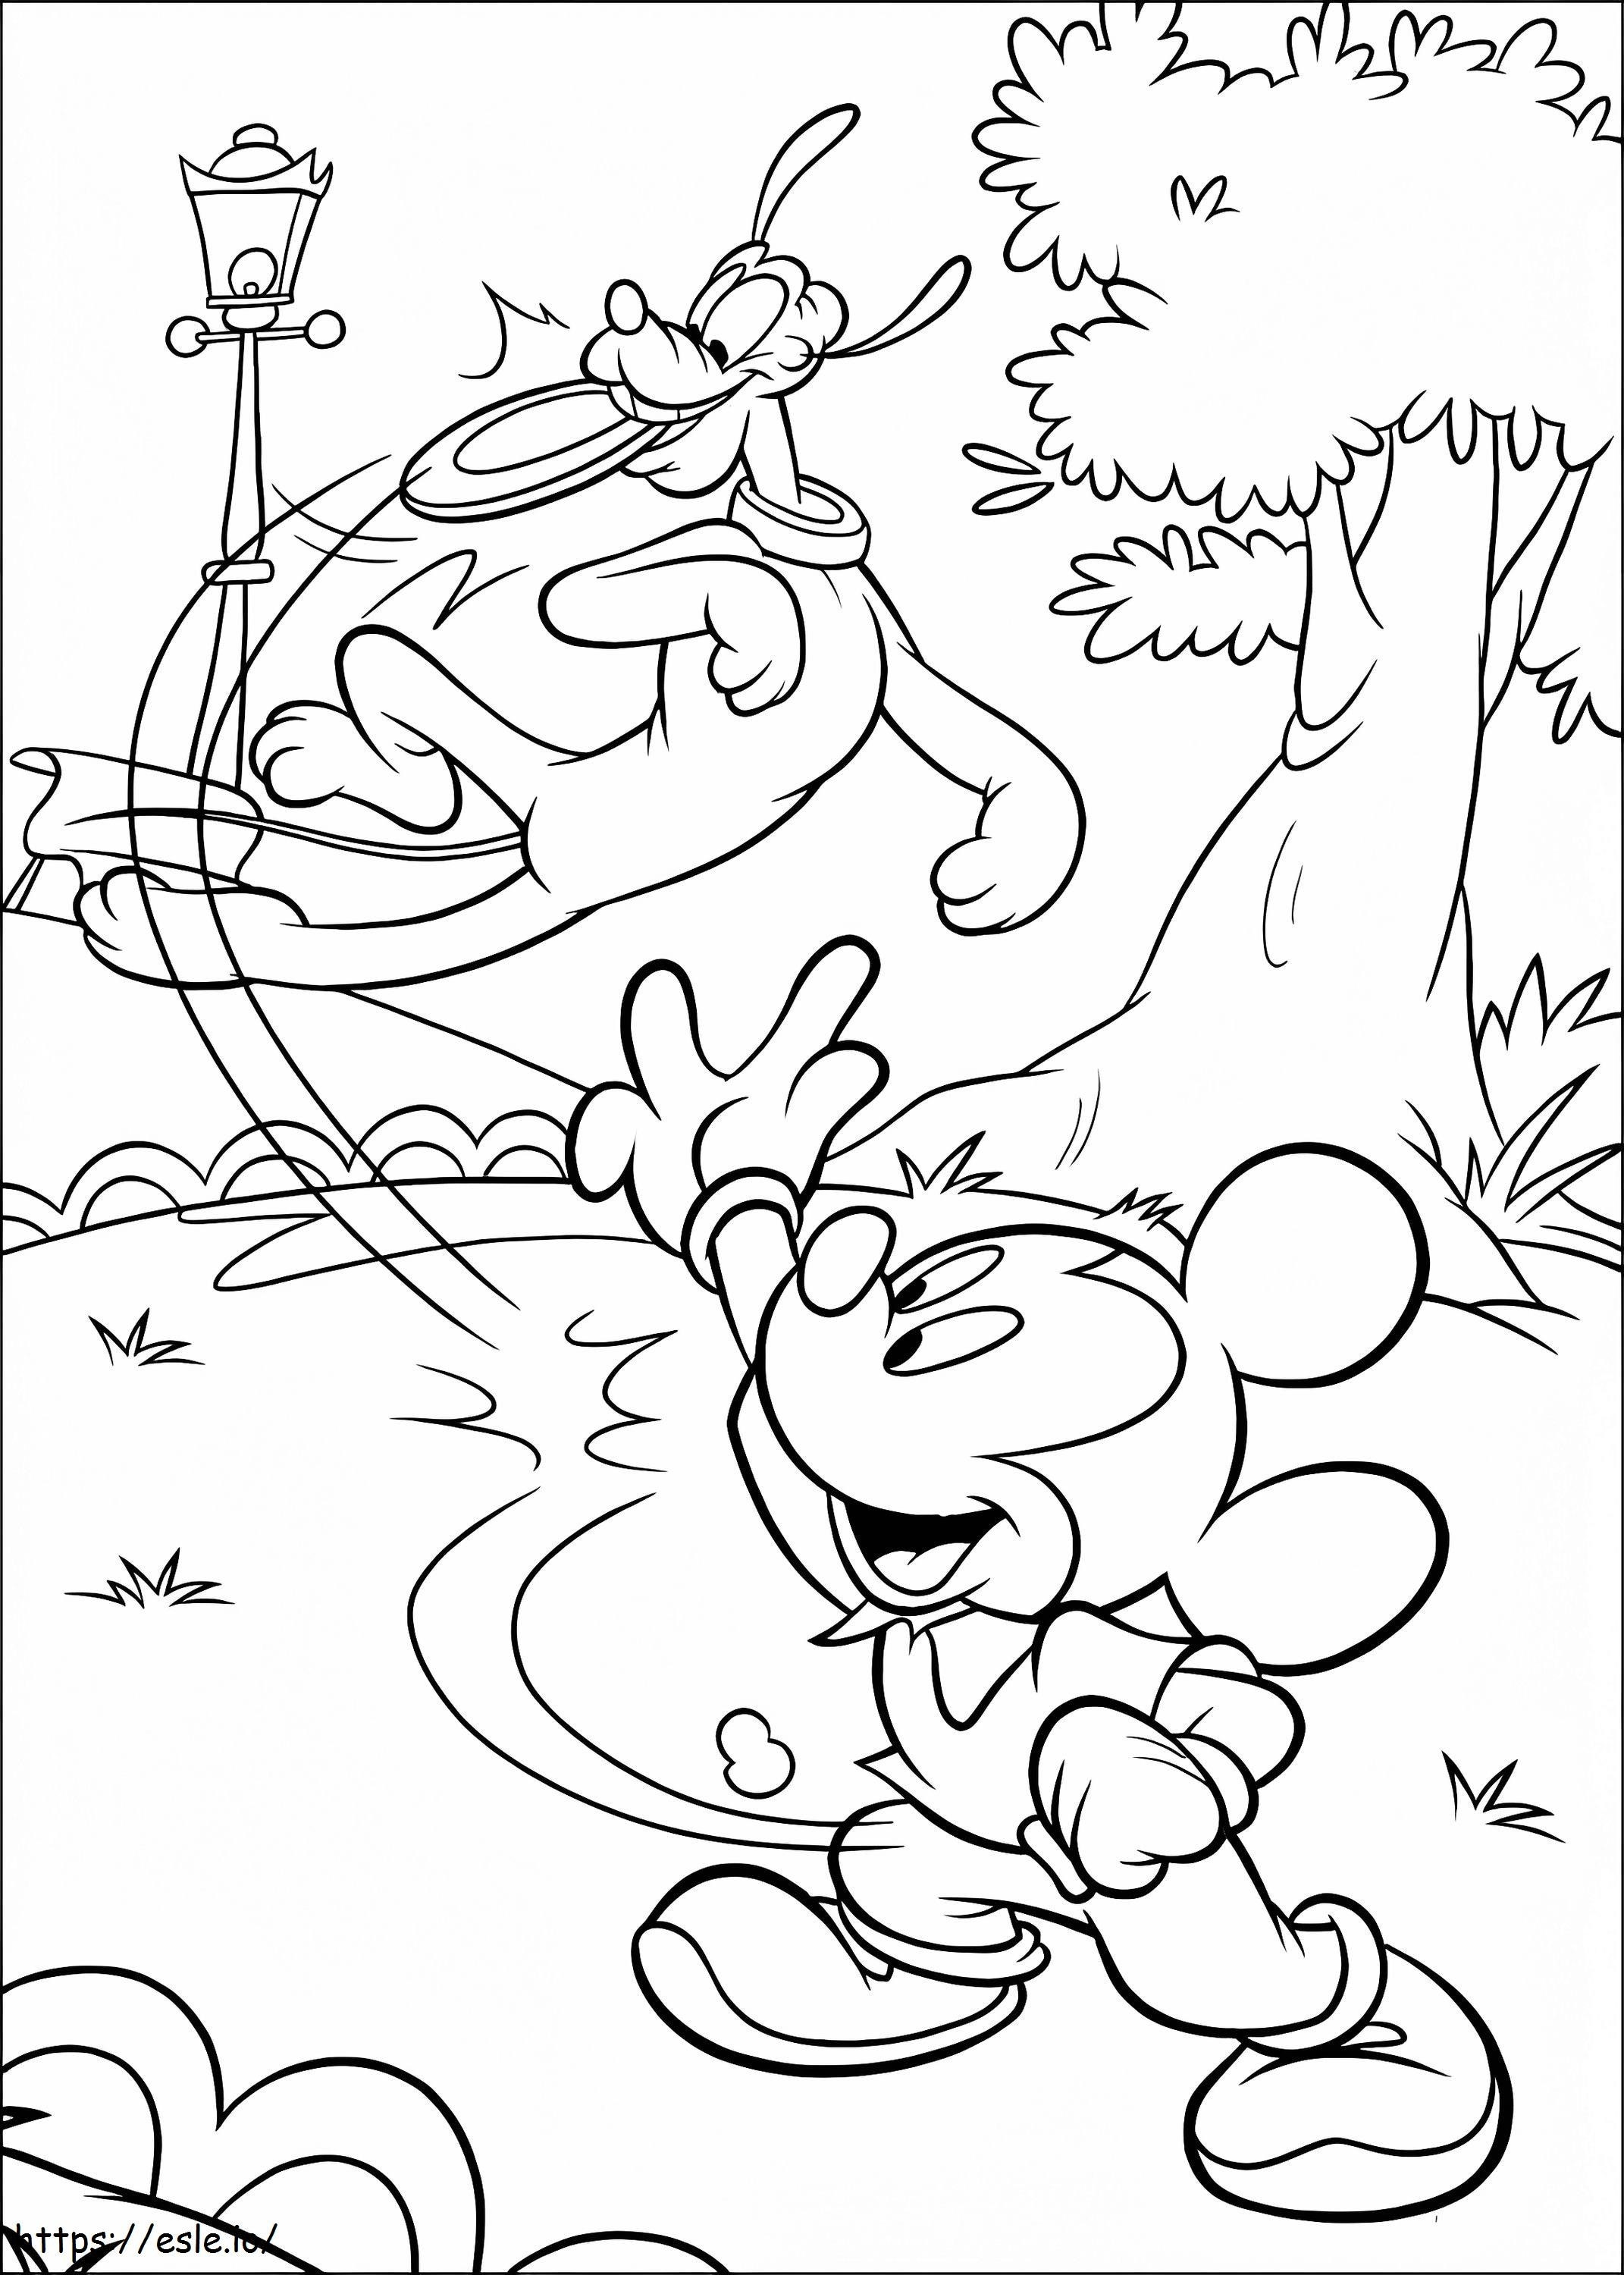 Mickey se joacă cu Pluto de colorat